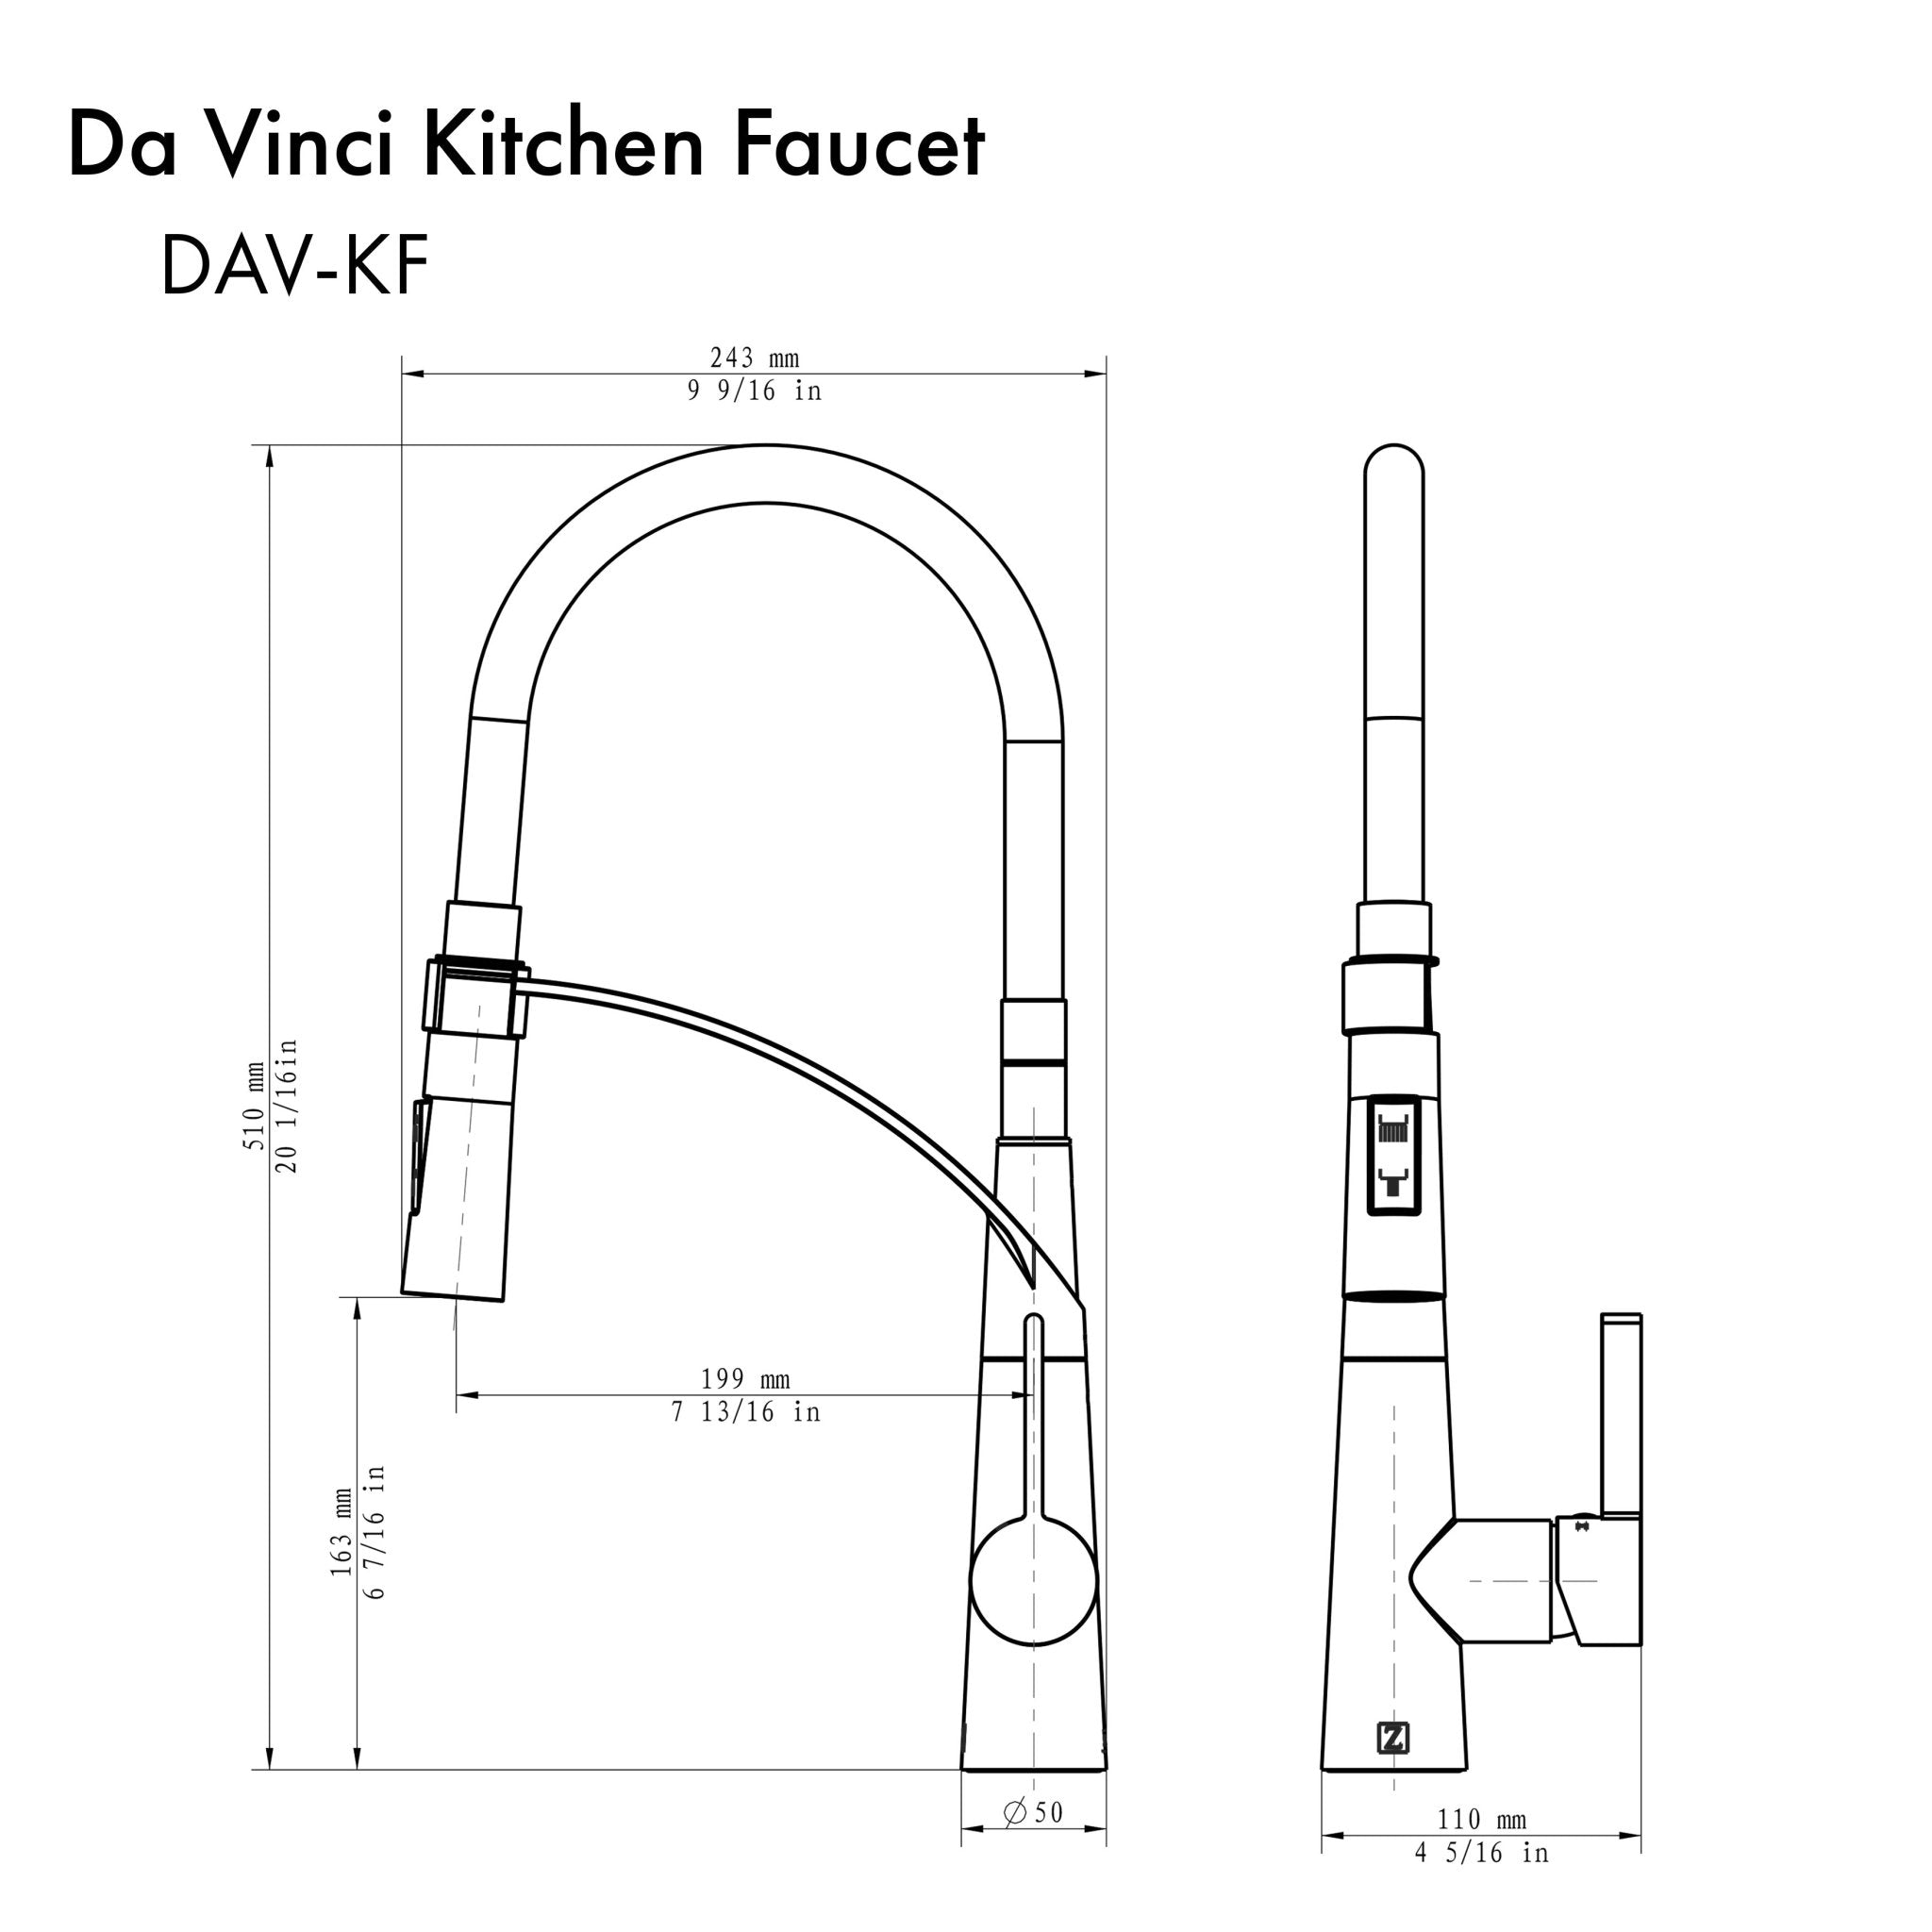 ZLINE Kitchen and Bath, ZLINE Da Vinci Kitchen Faucet in Brushed Nickel (DAV-KF-BN), DAV-KF-BN,